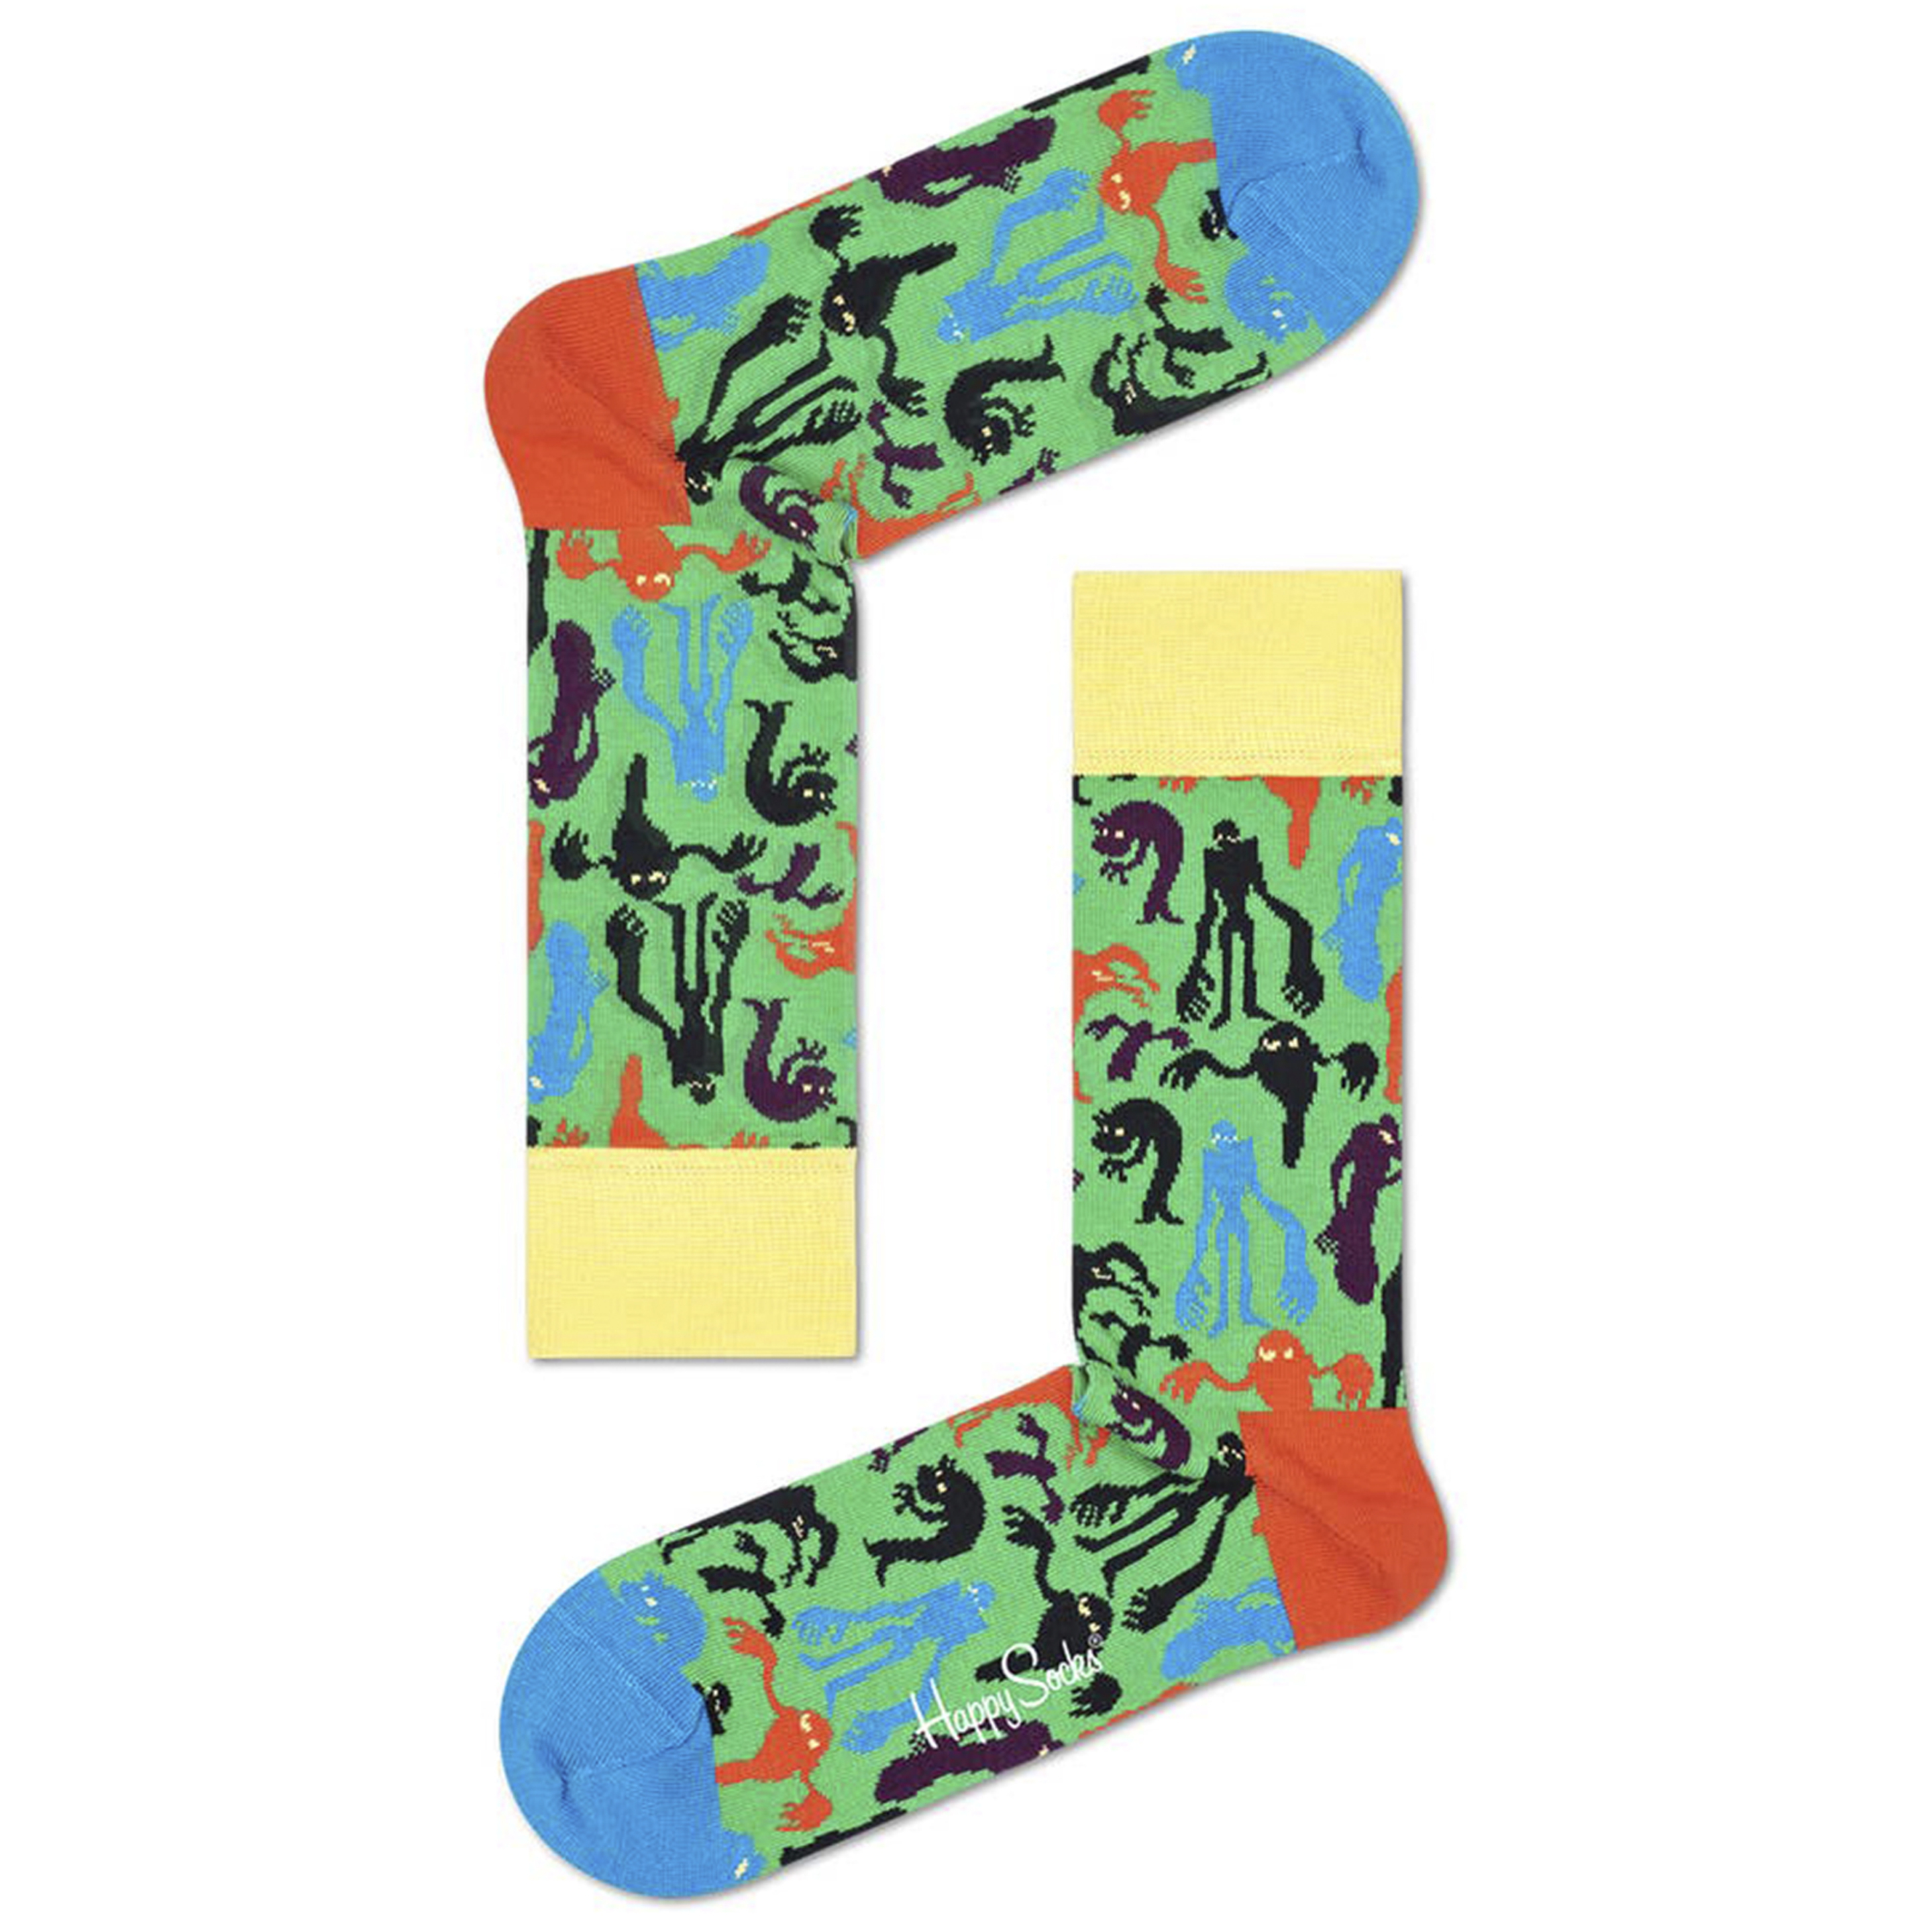 Calcetines Happy Socks Fantasmas - Multicolor  MKP